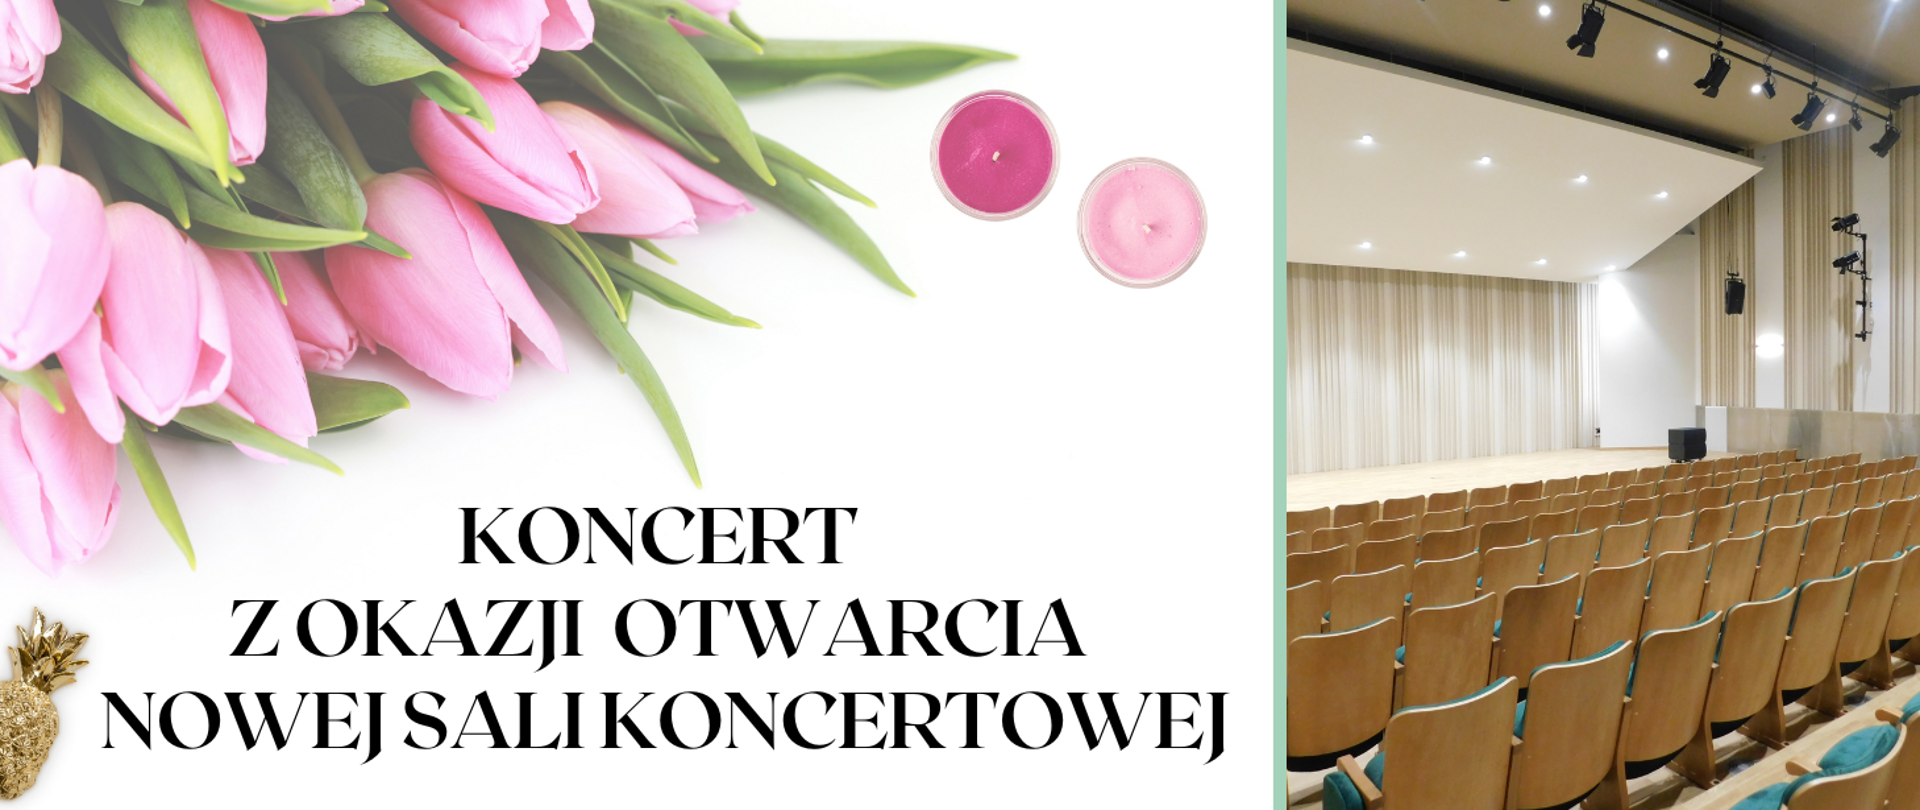 Na zdjęciu po lewej stronie u góry na białym tle leży pęk różowych tulipanów i dwie różowe świeczki. Poniżej napis: "koncert z okazji otwarcia nowej sali koncertowej". Po prawej stronie ujęcie sali koncertowej. Rzędy foteli oraz scena z włączonym oświetleniem.